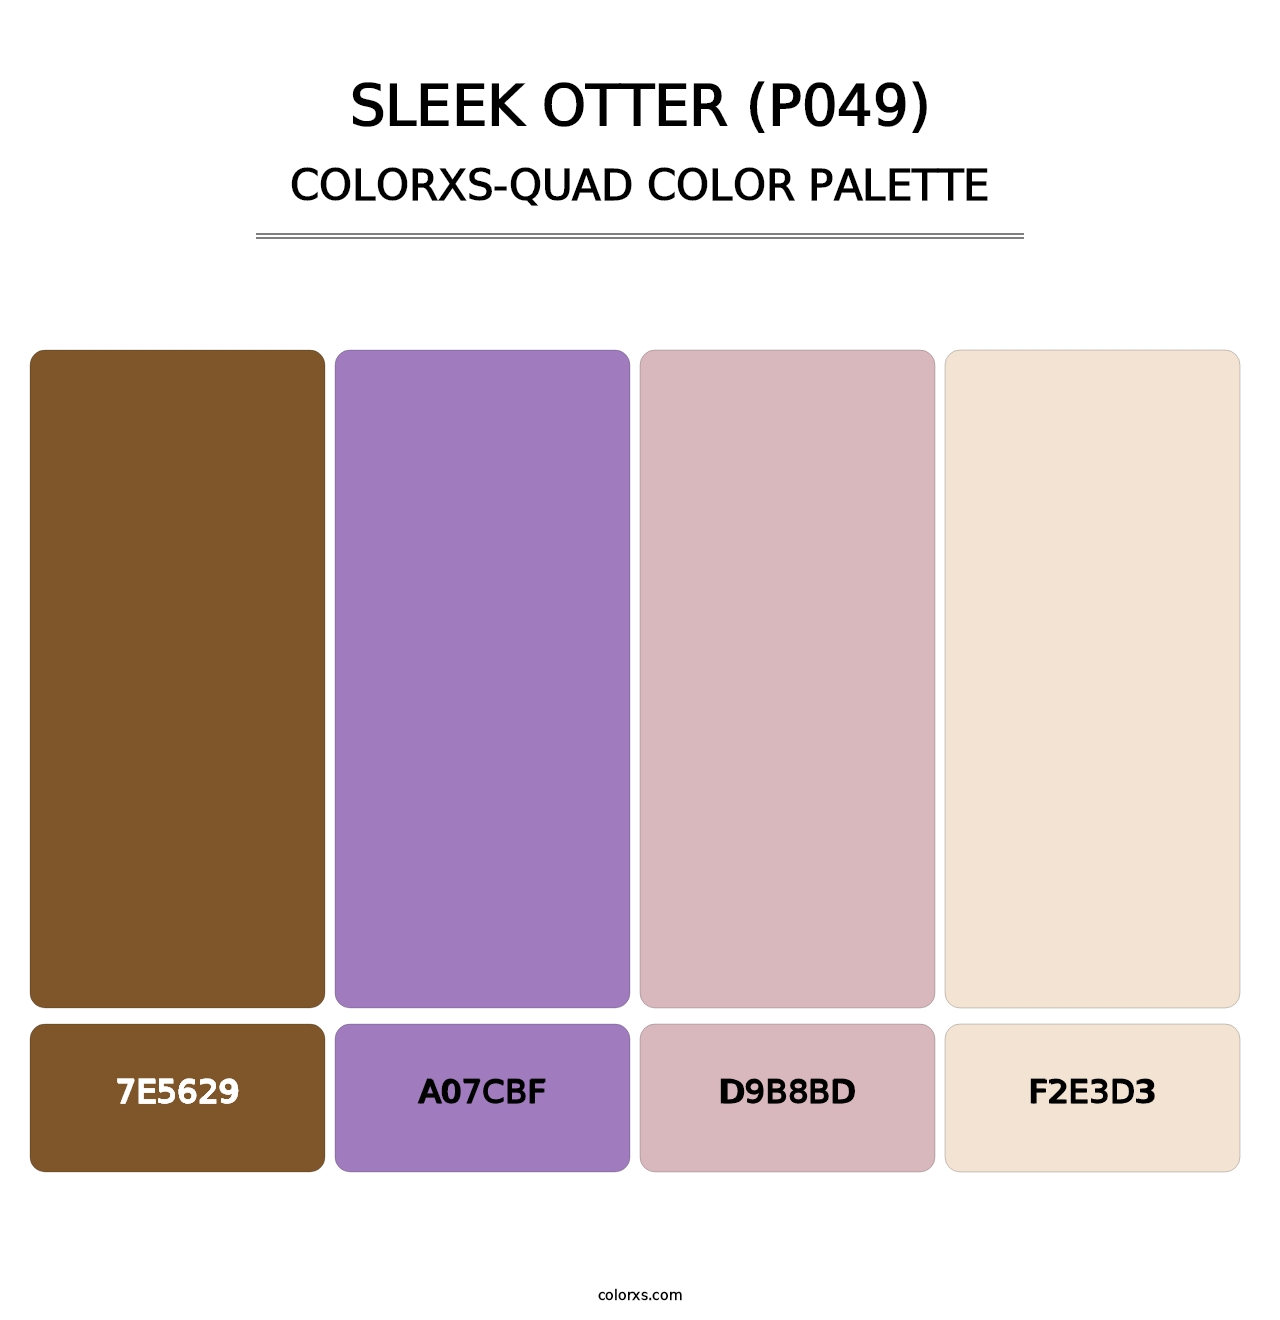 Sleek Otter (P049) - Colorxs Quad Palette